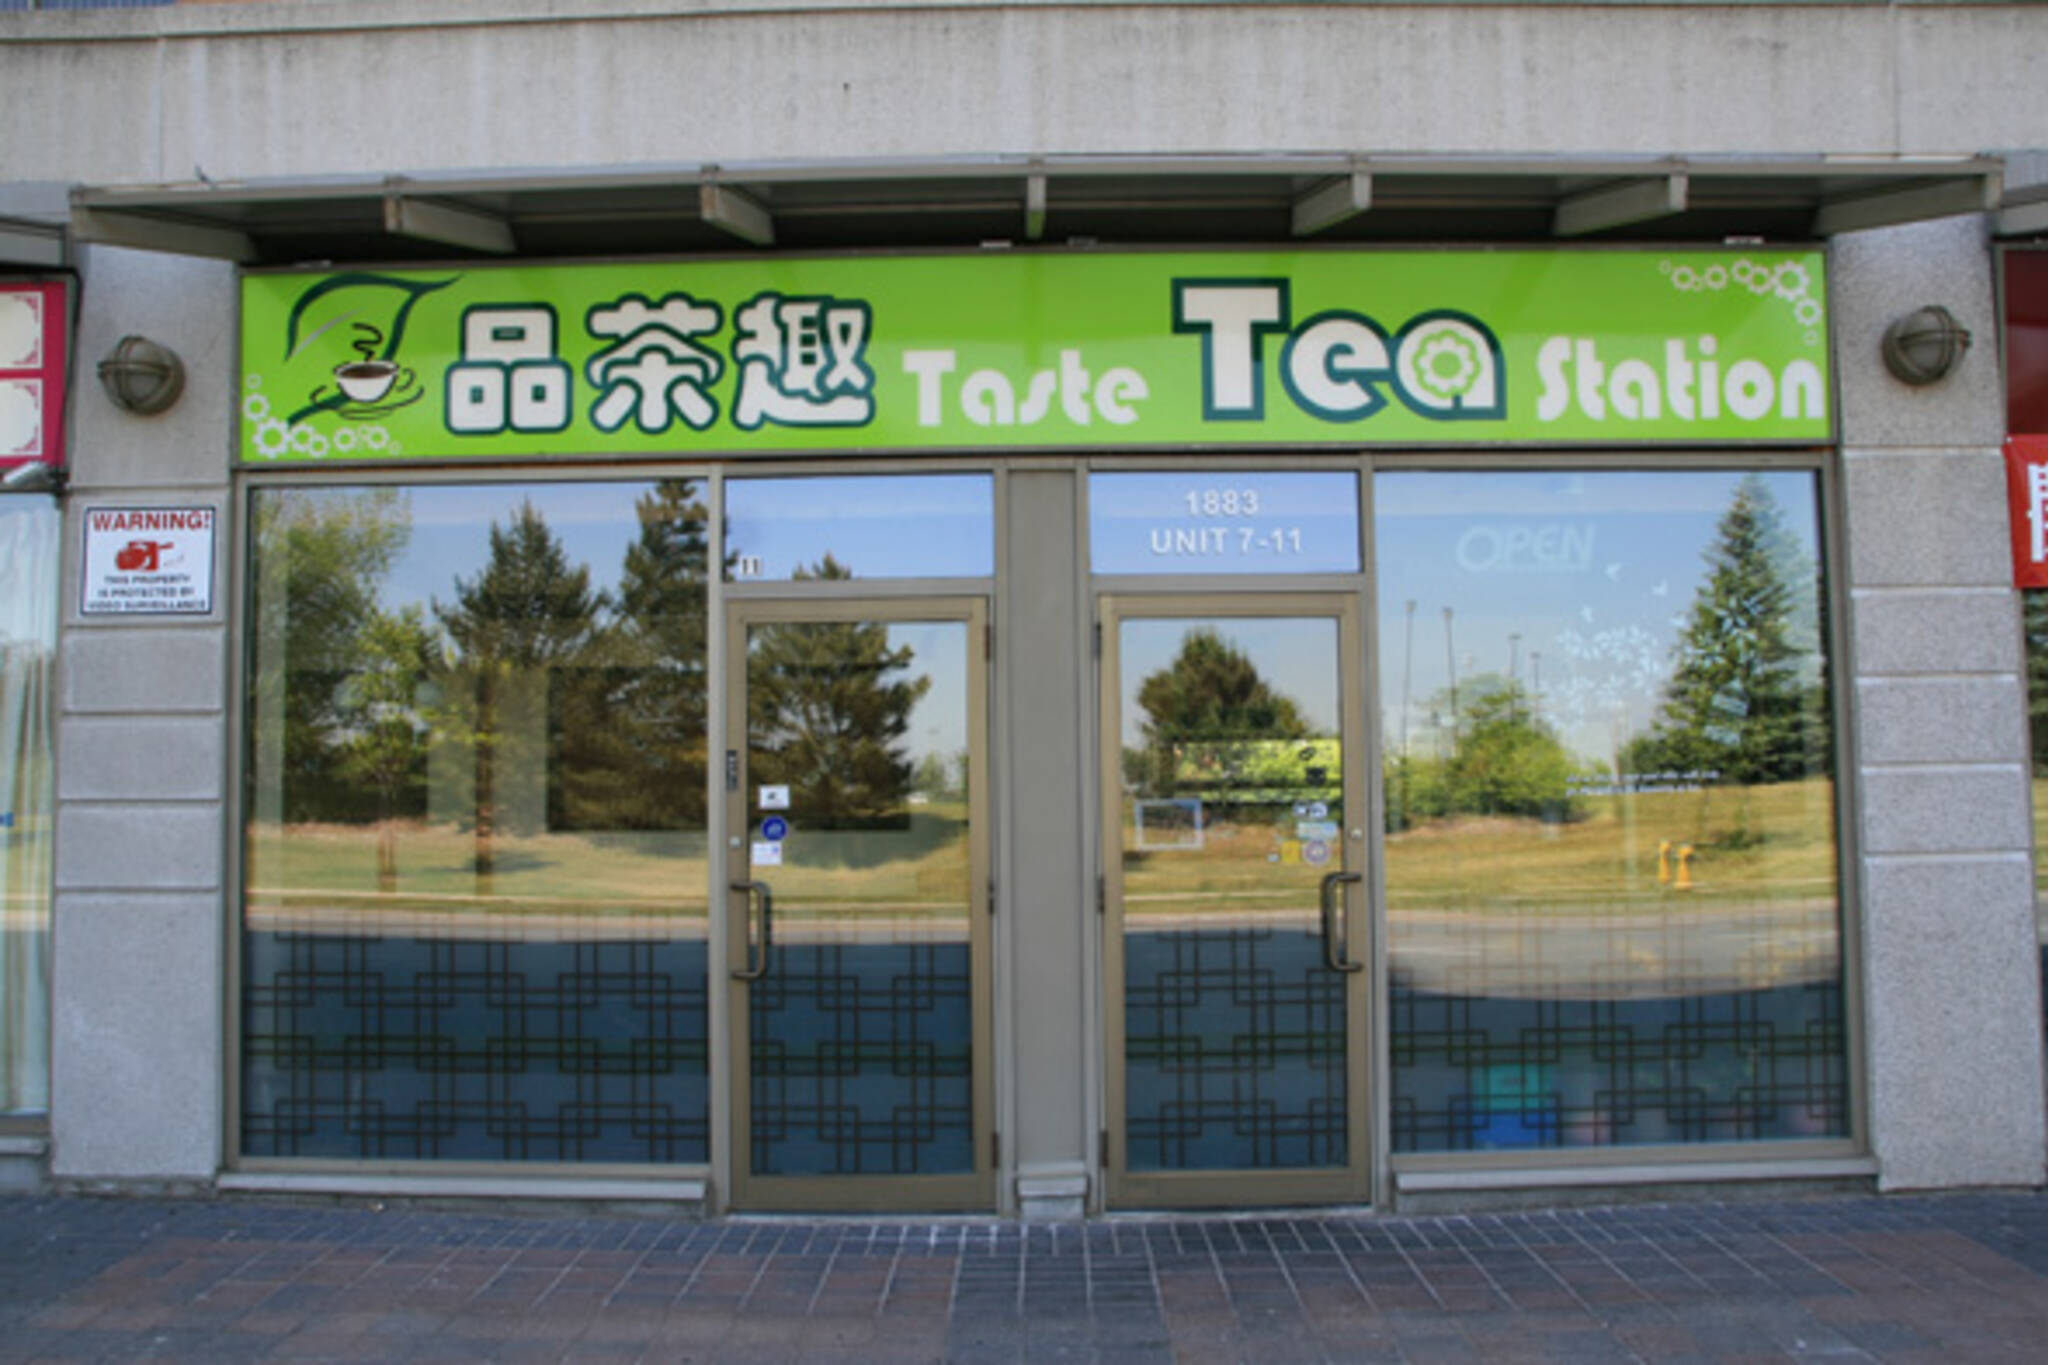 Taste Tea Station